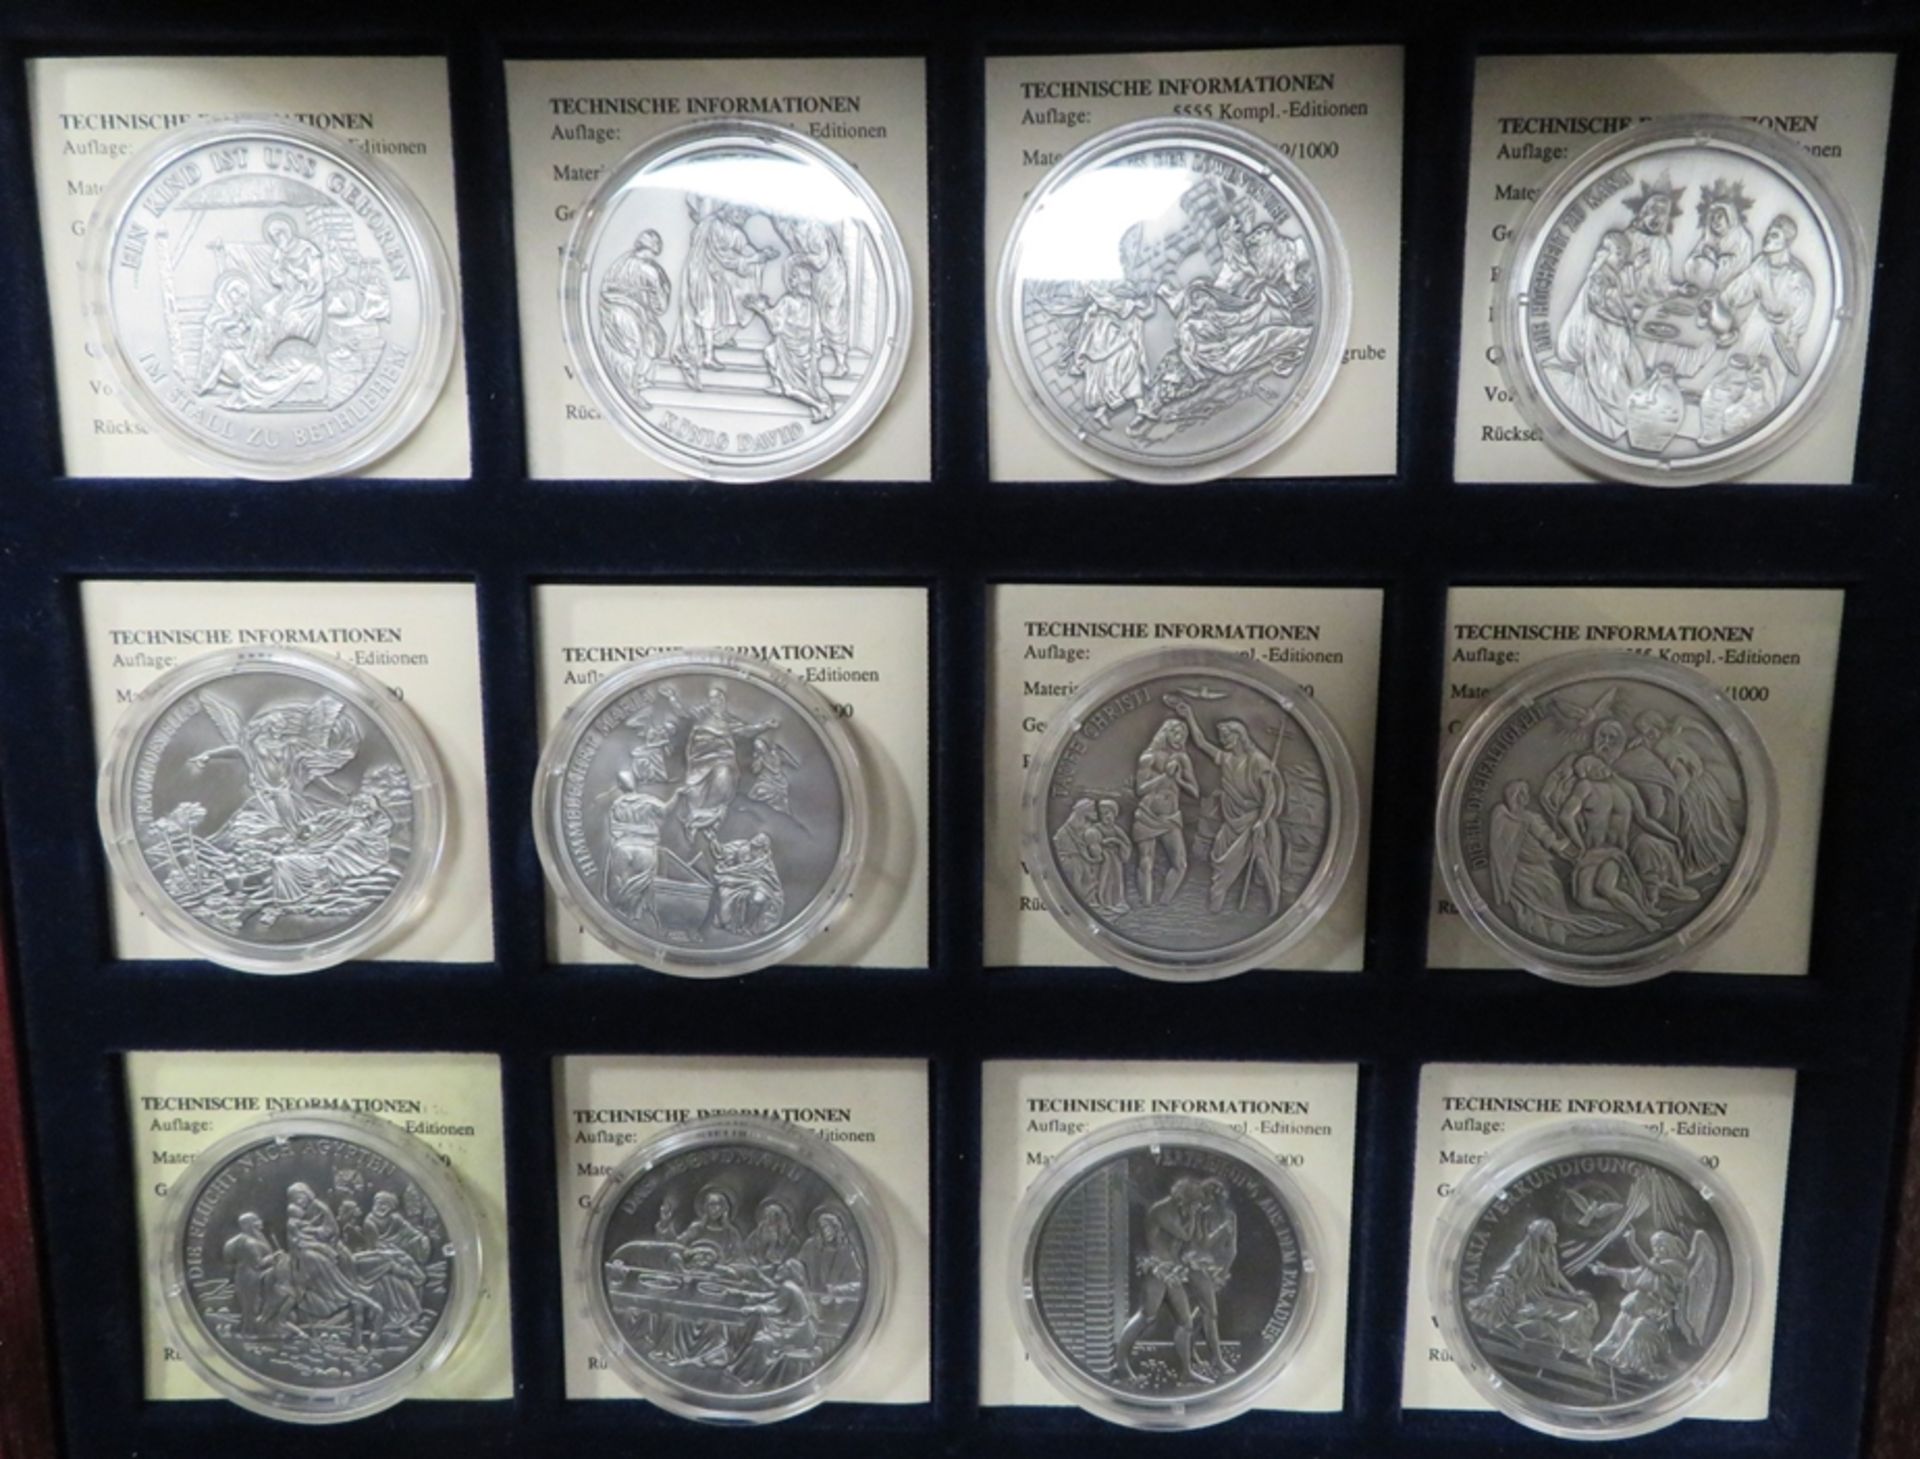 12 Silbermünzen, Geschichte des Christentums, 11 x je 20 g Feinsilber 999/000, diese zus. 220 g, 1